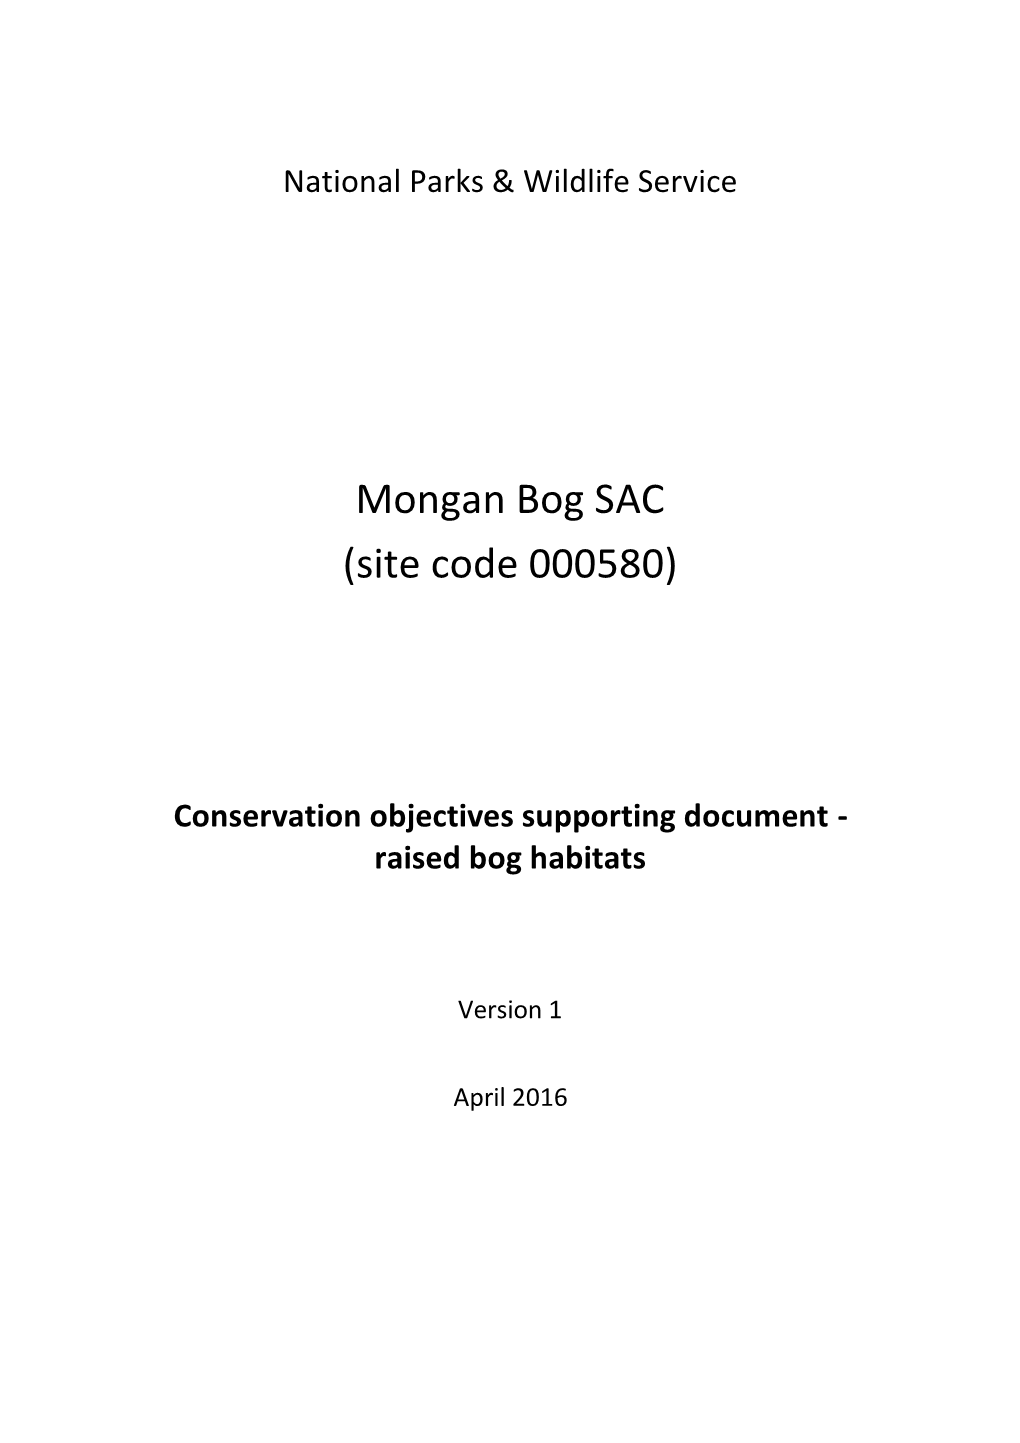 Mongan Bog SAC (Site Code 000580)